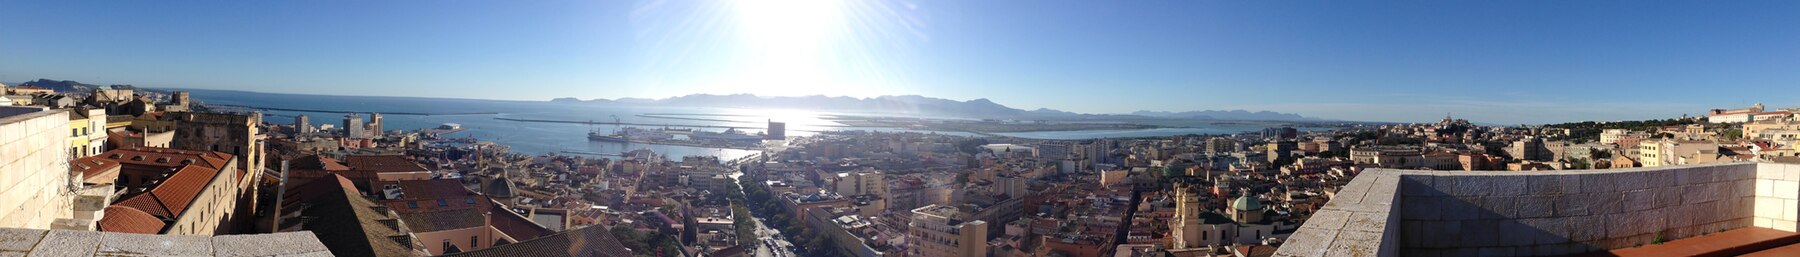 Vista di Cagliari dalla Torre dell'Elefante.jpg